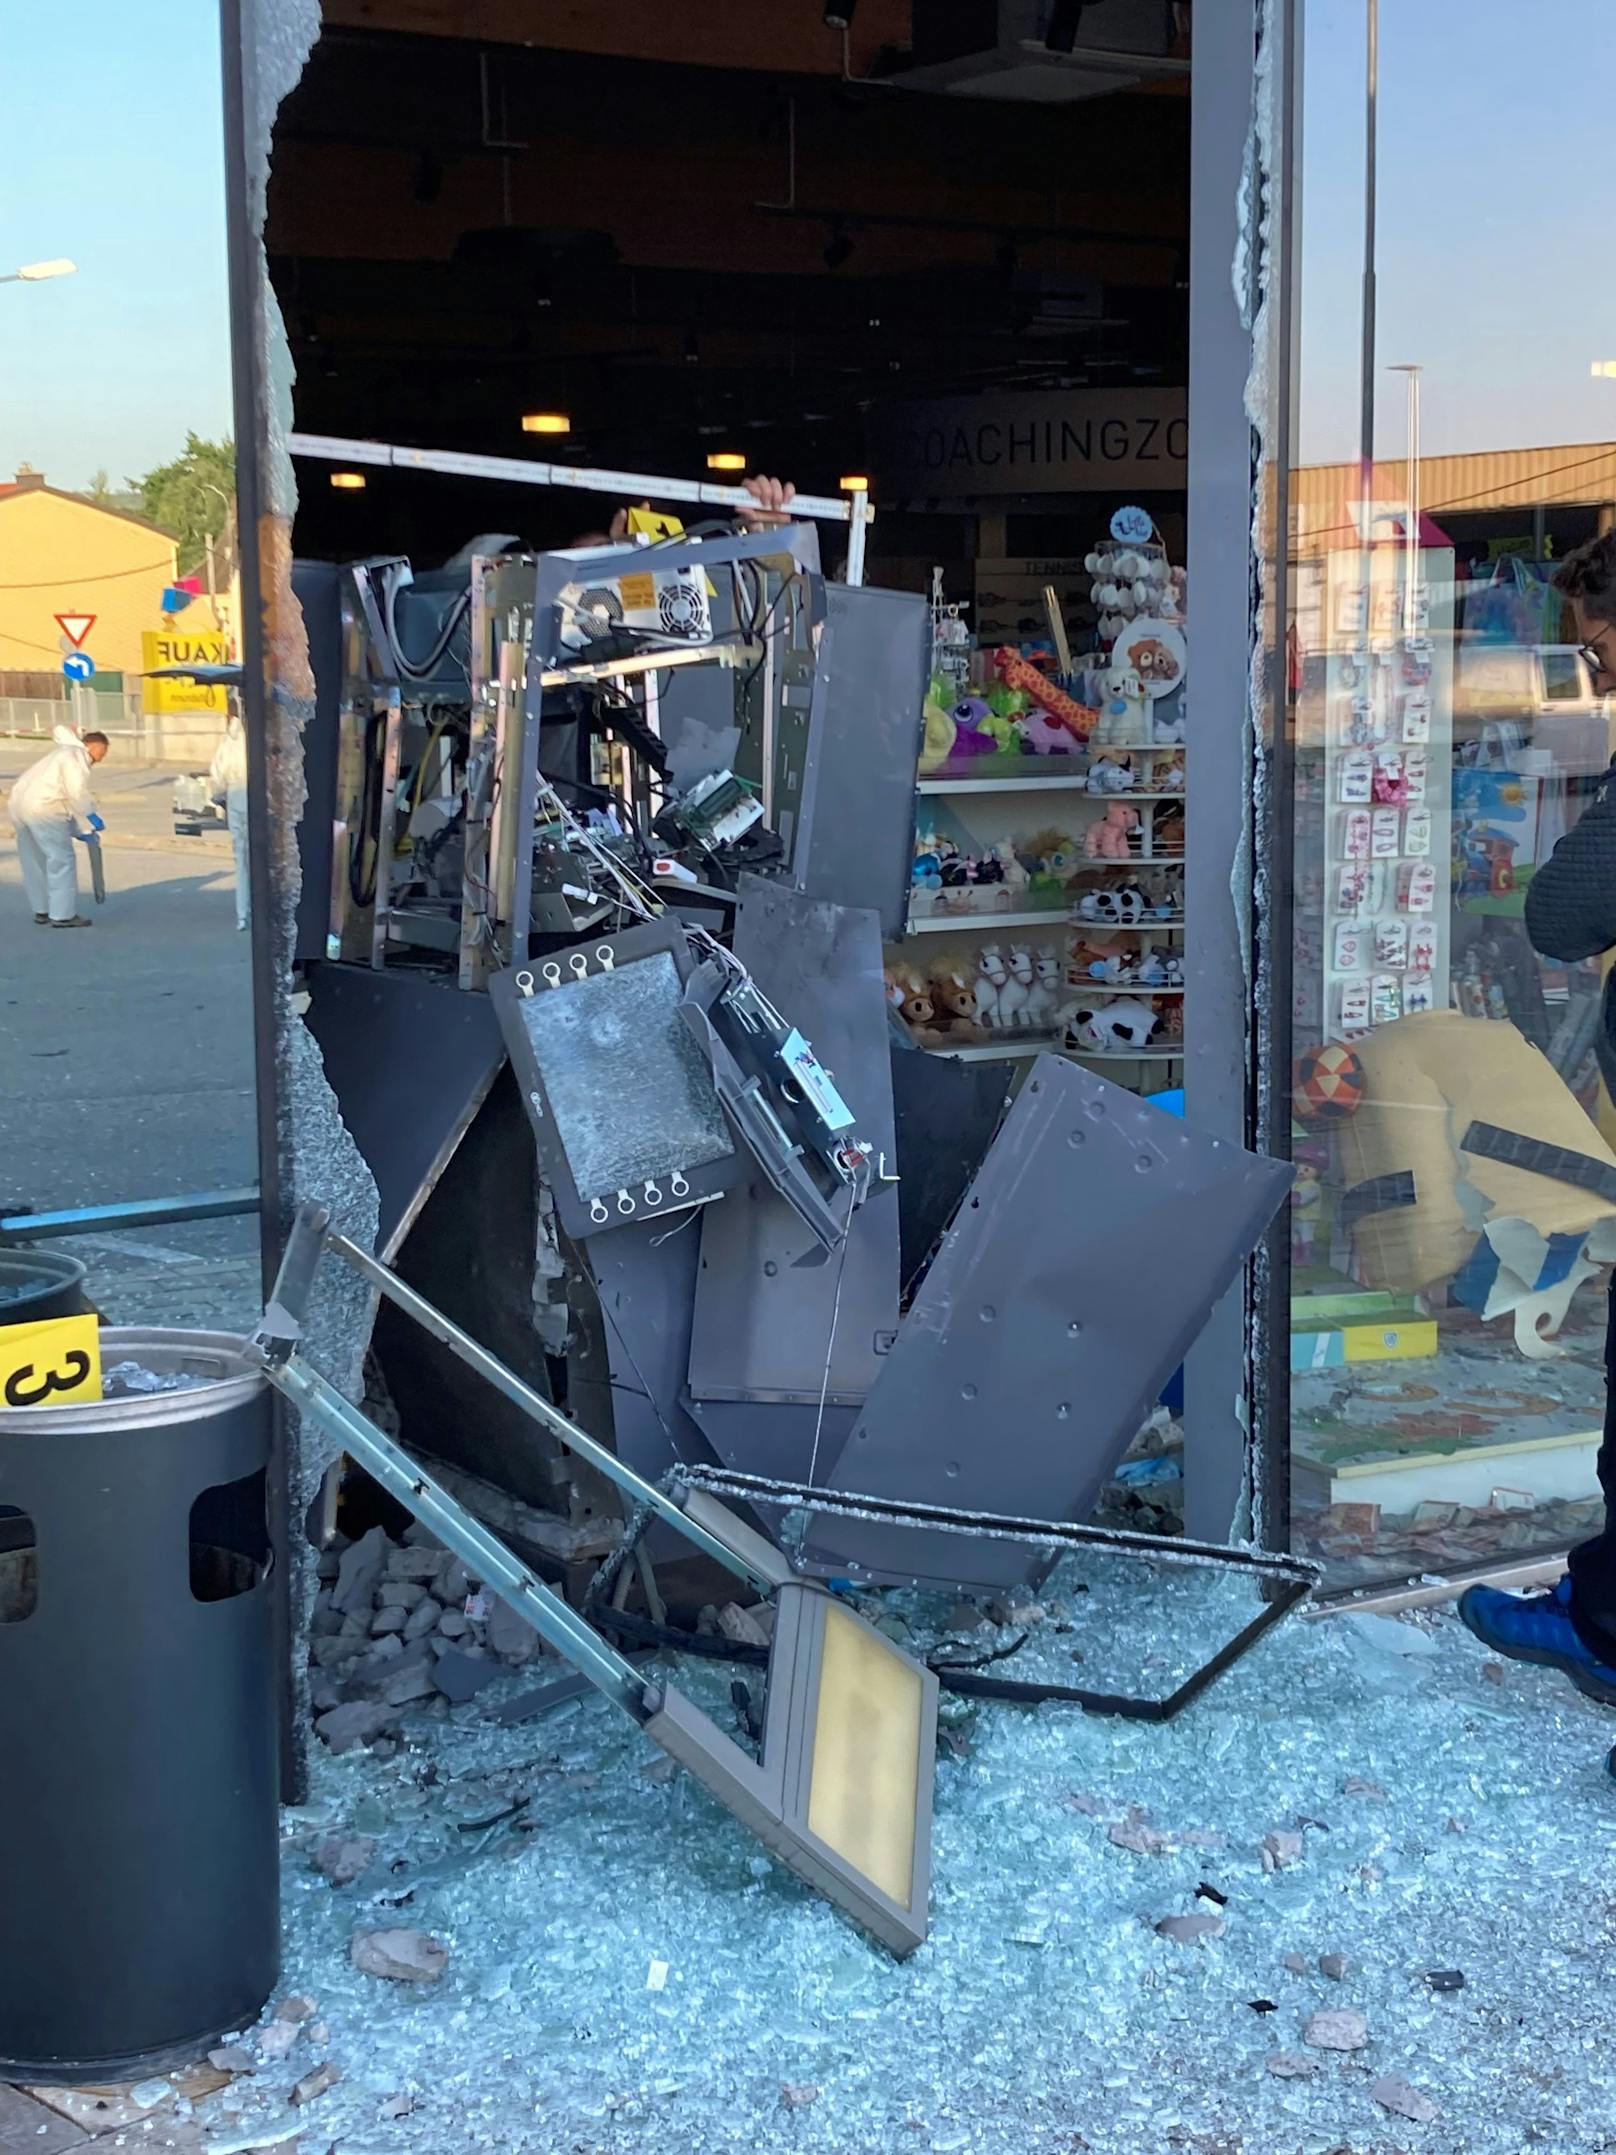 Bilder vom explodierten Bankomaten.